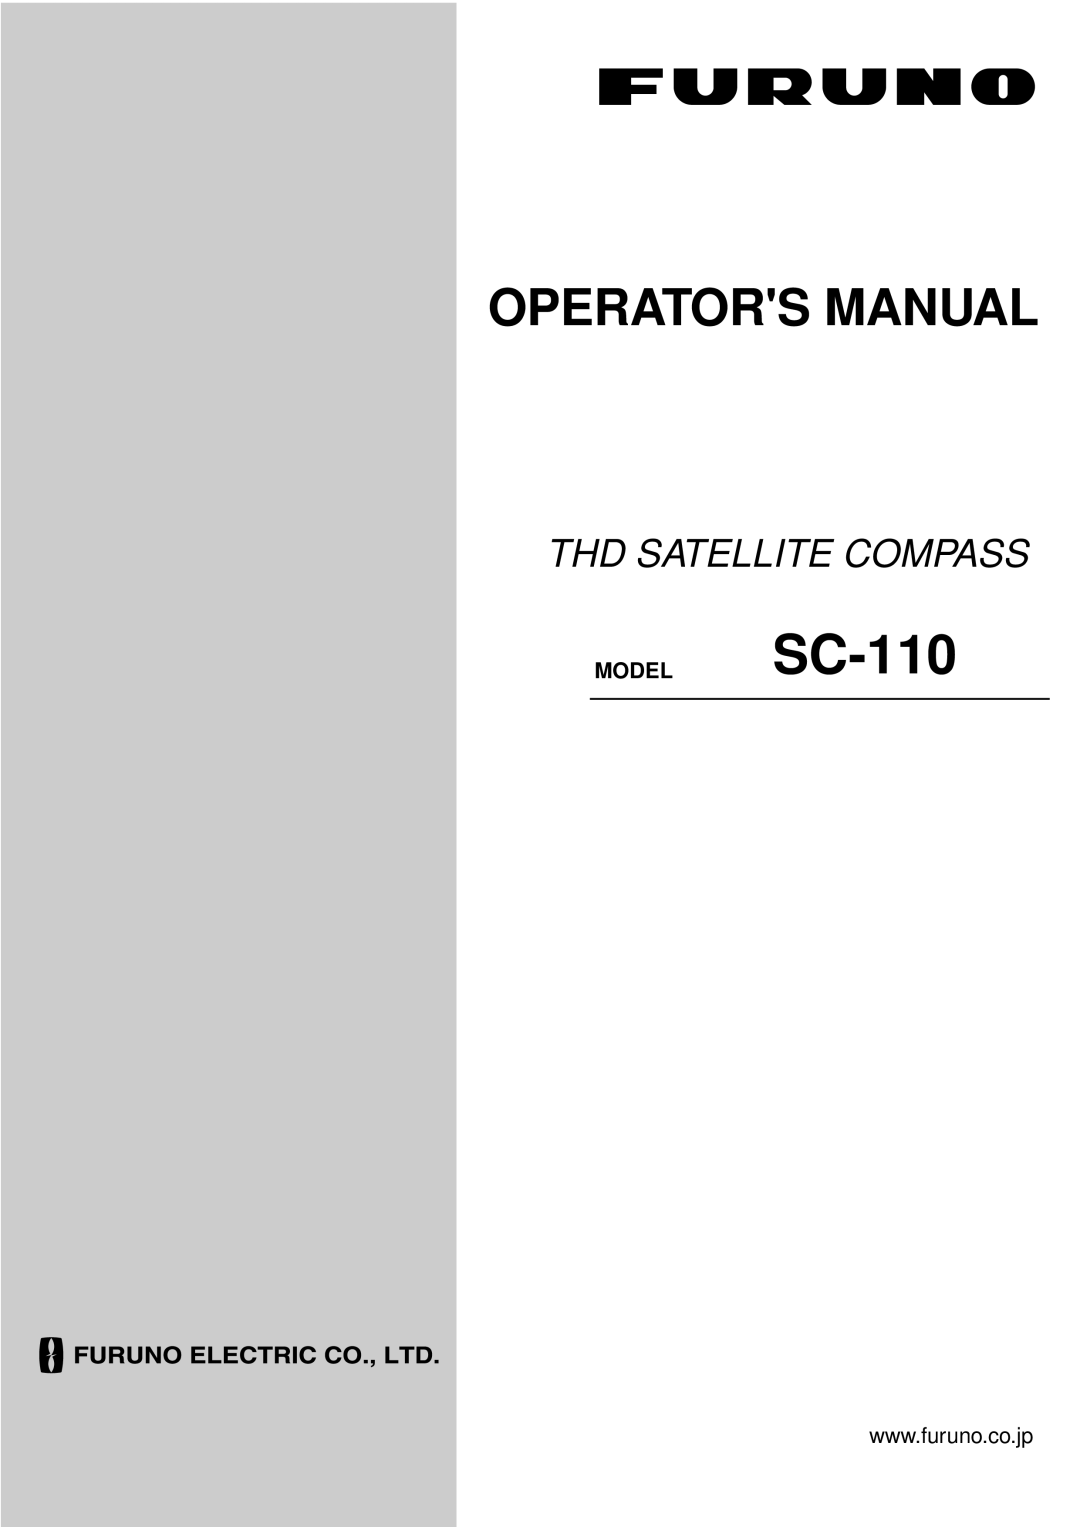 Furuno manual Operators Manual, Thd Satellite Compass, MODEL SC-110 